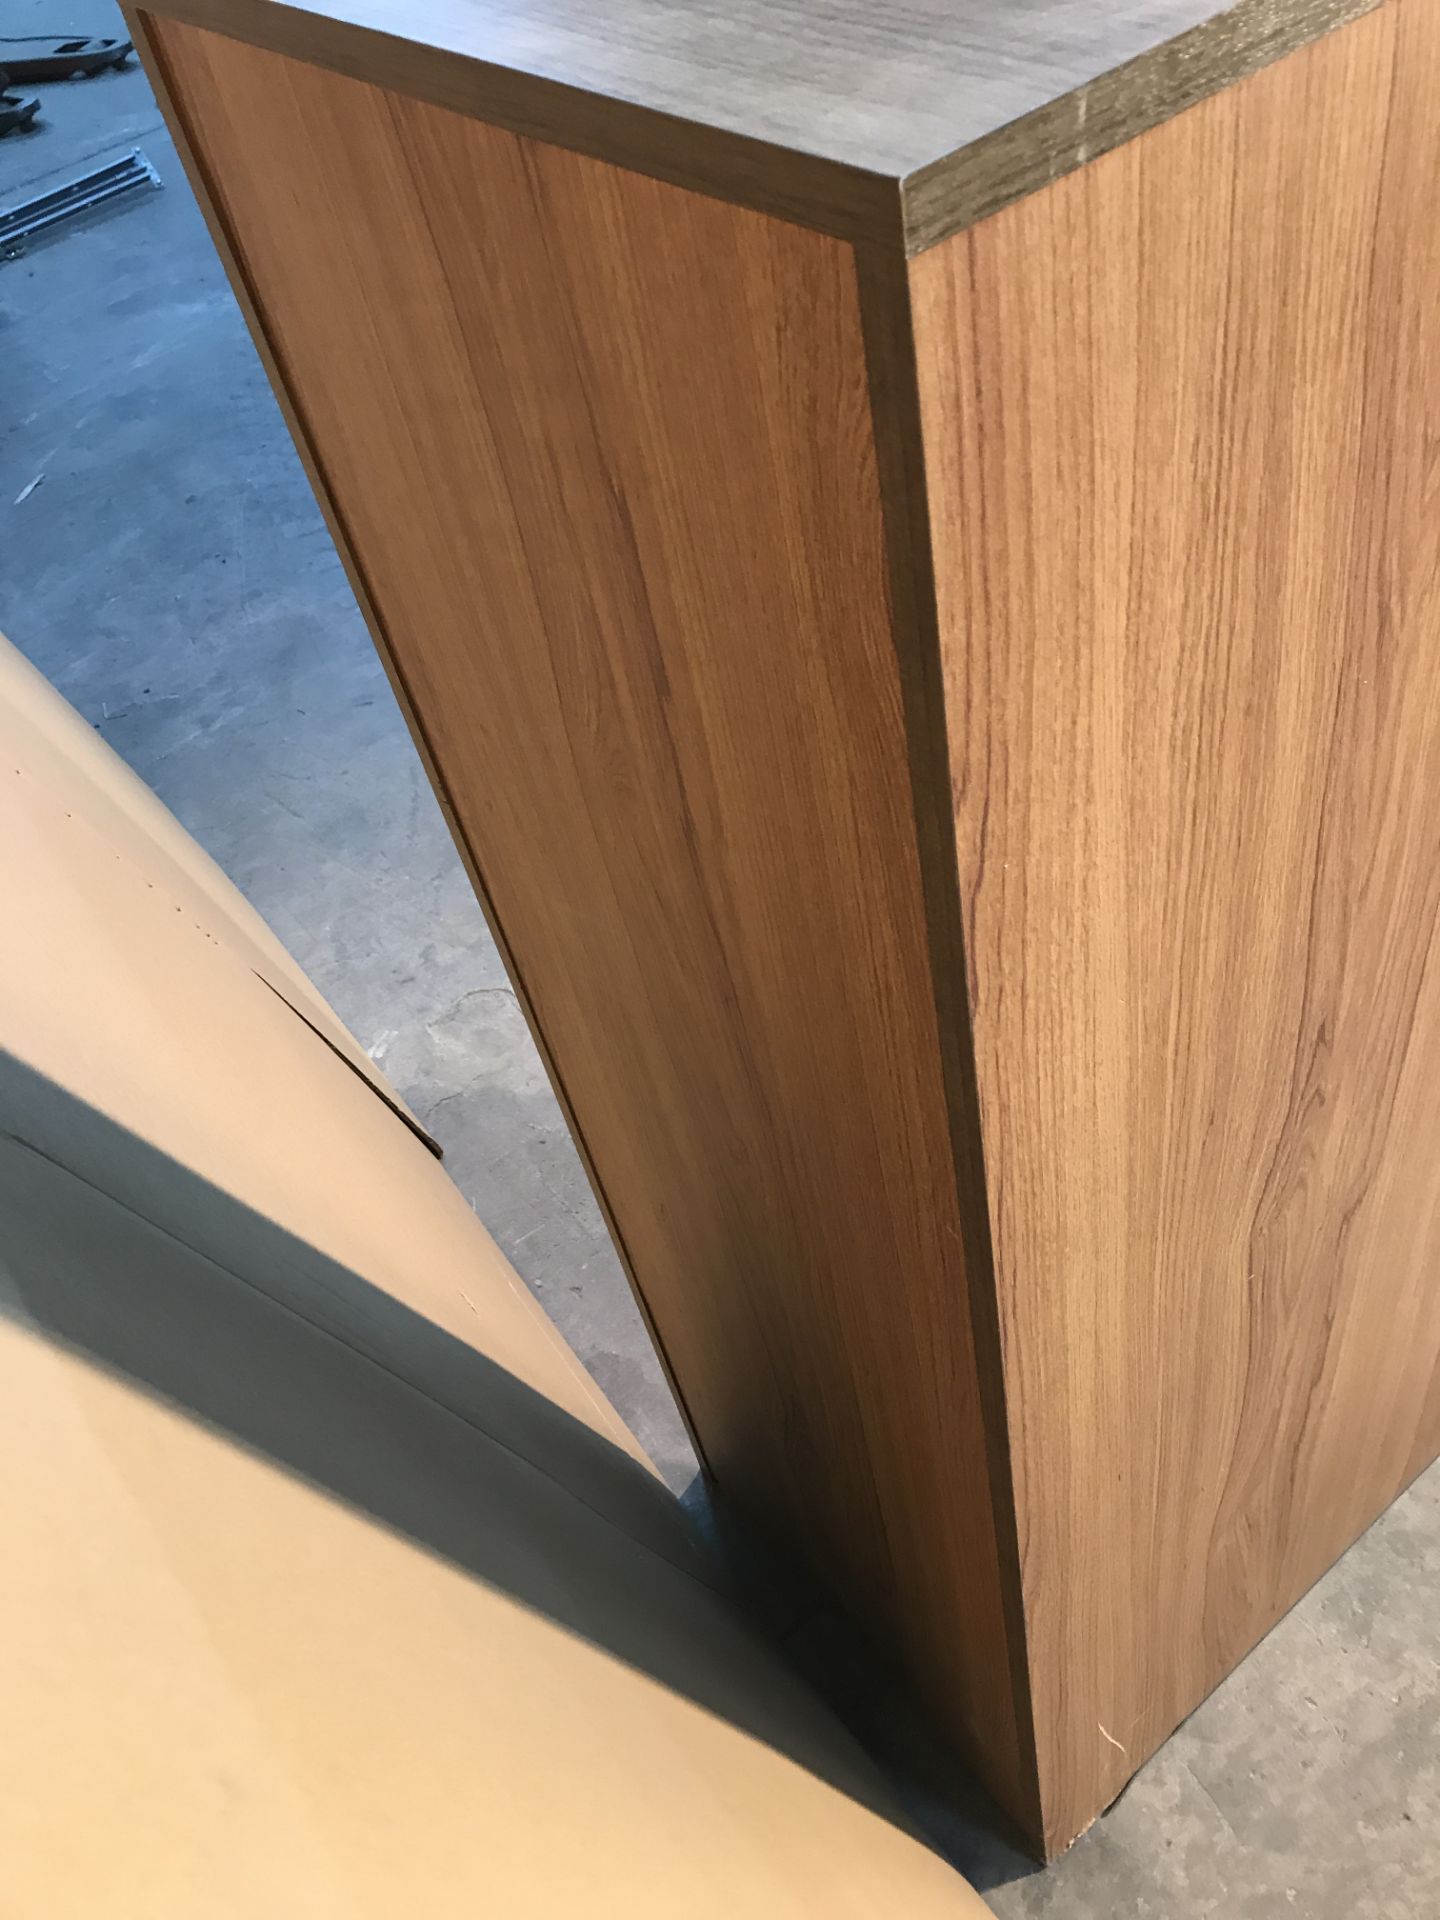 Wooden 4 Door Filing Cabinet - Image 4 of 4